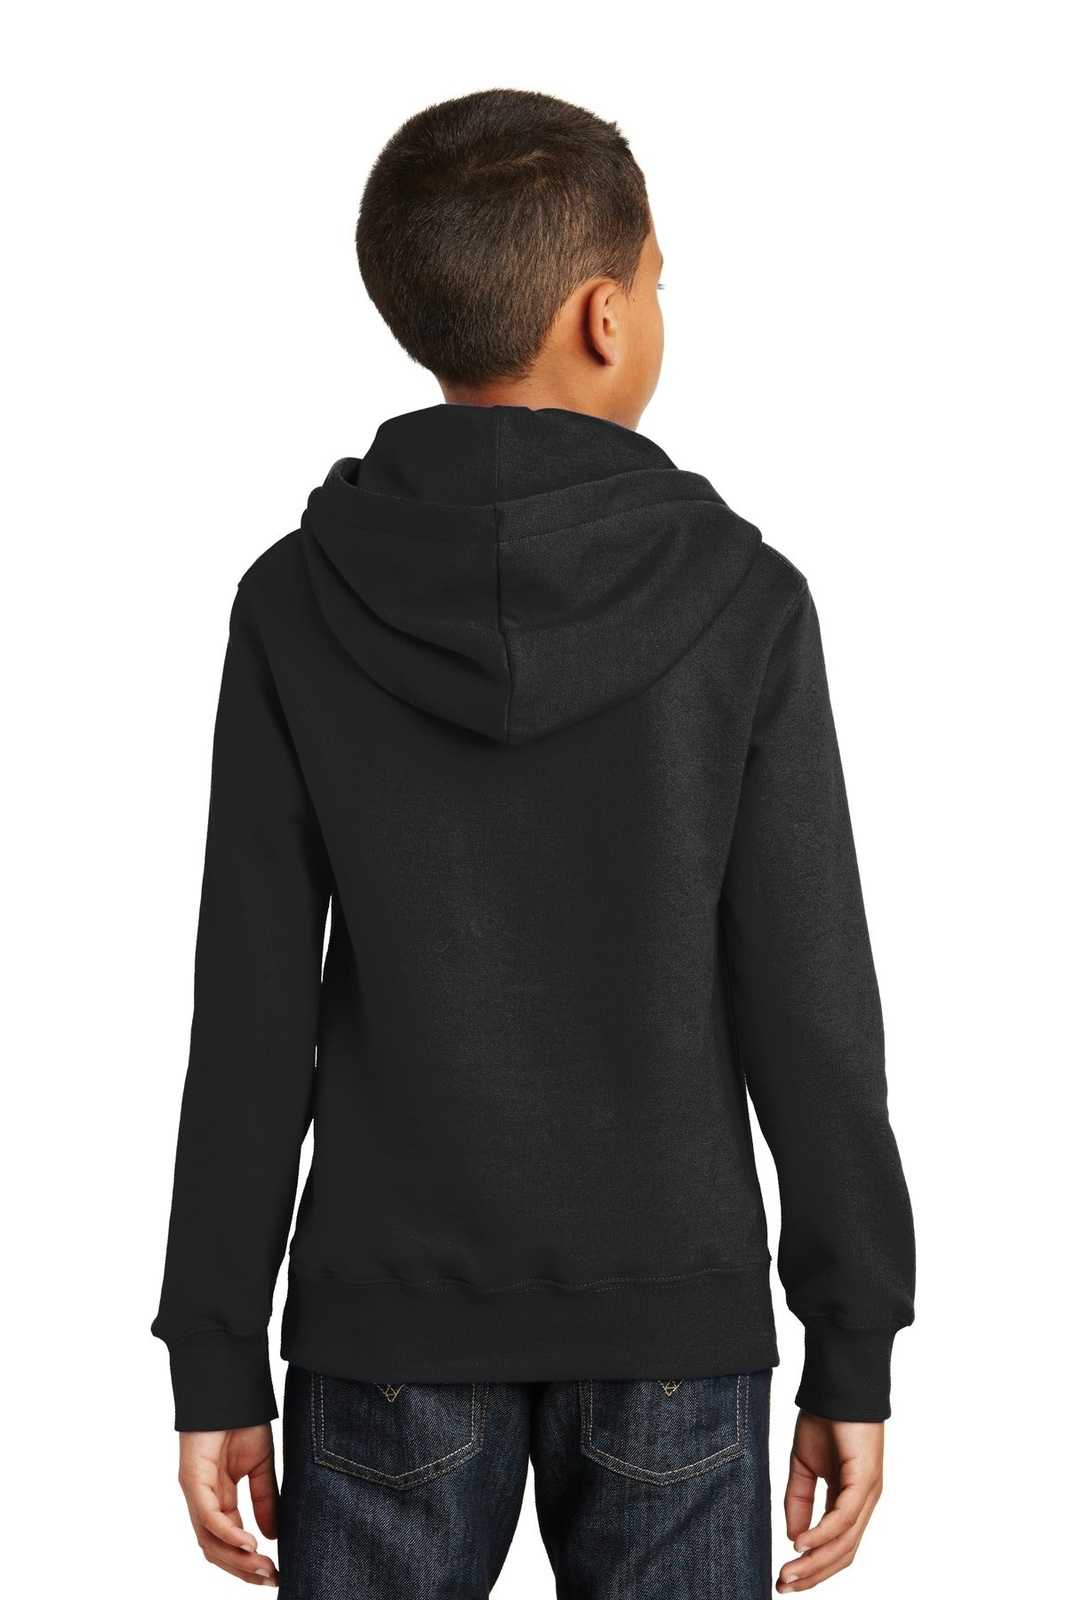 Port &amp; Company PC850YH Youth Fan Favorite Fleece Pullover Hooded Sweatshirt - Jet Black - HIT a Double - 2